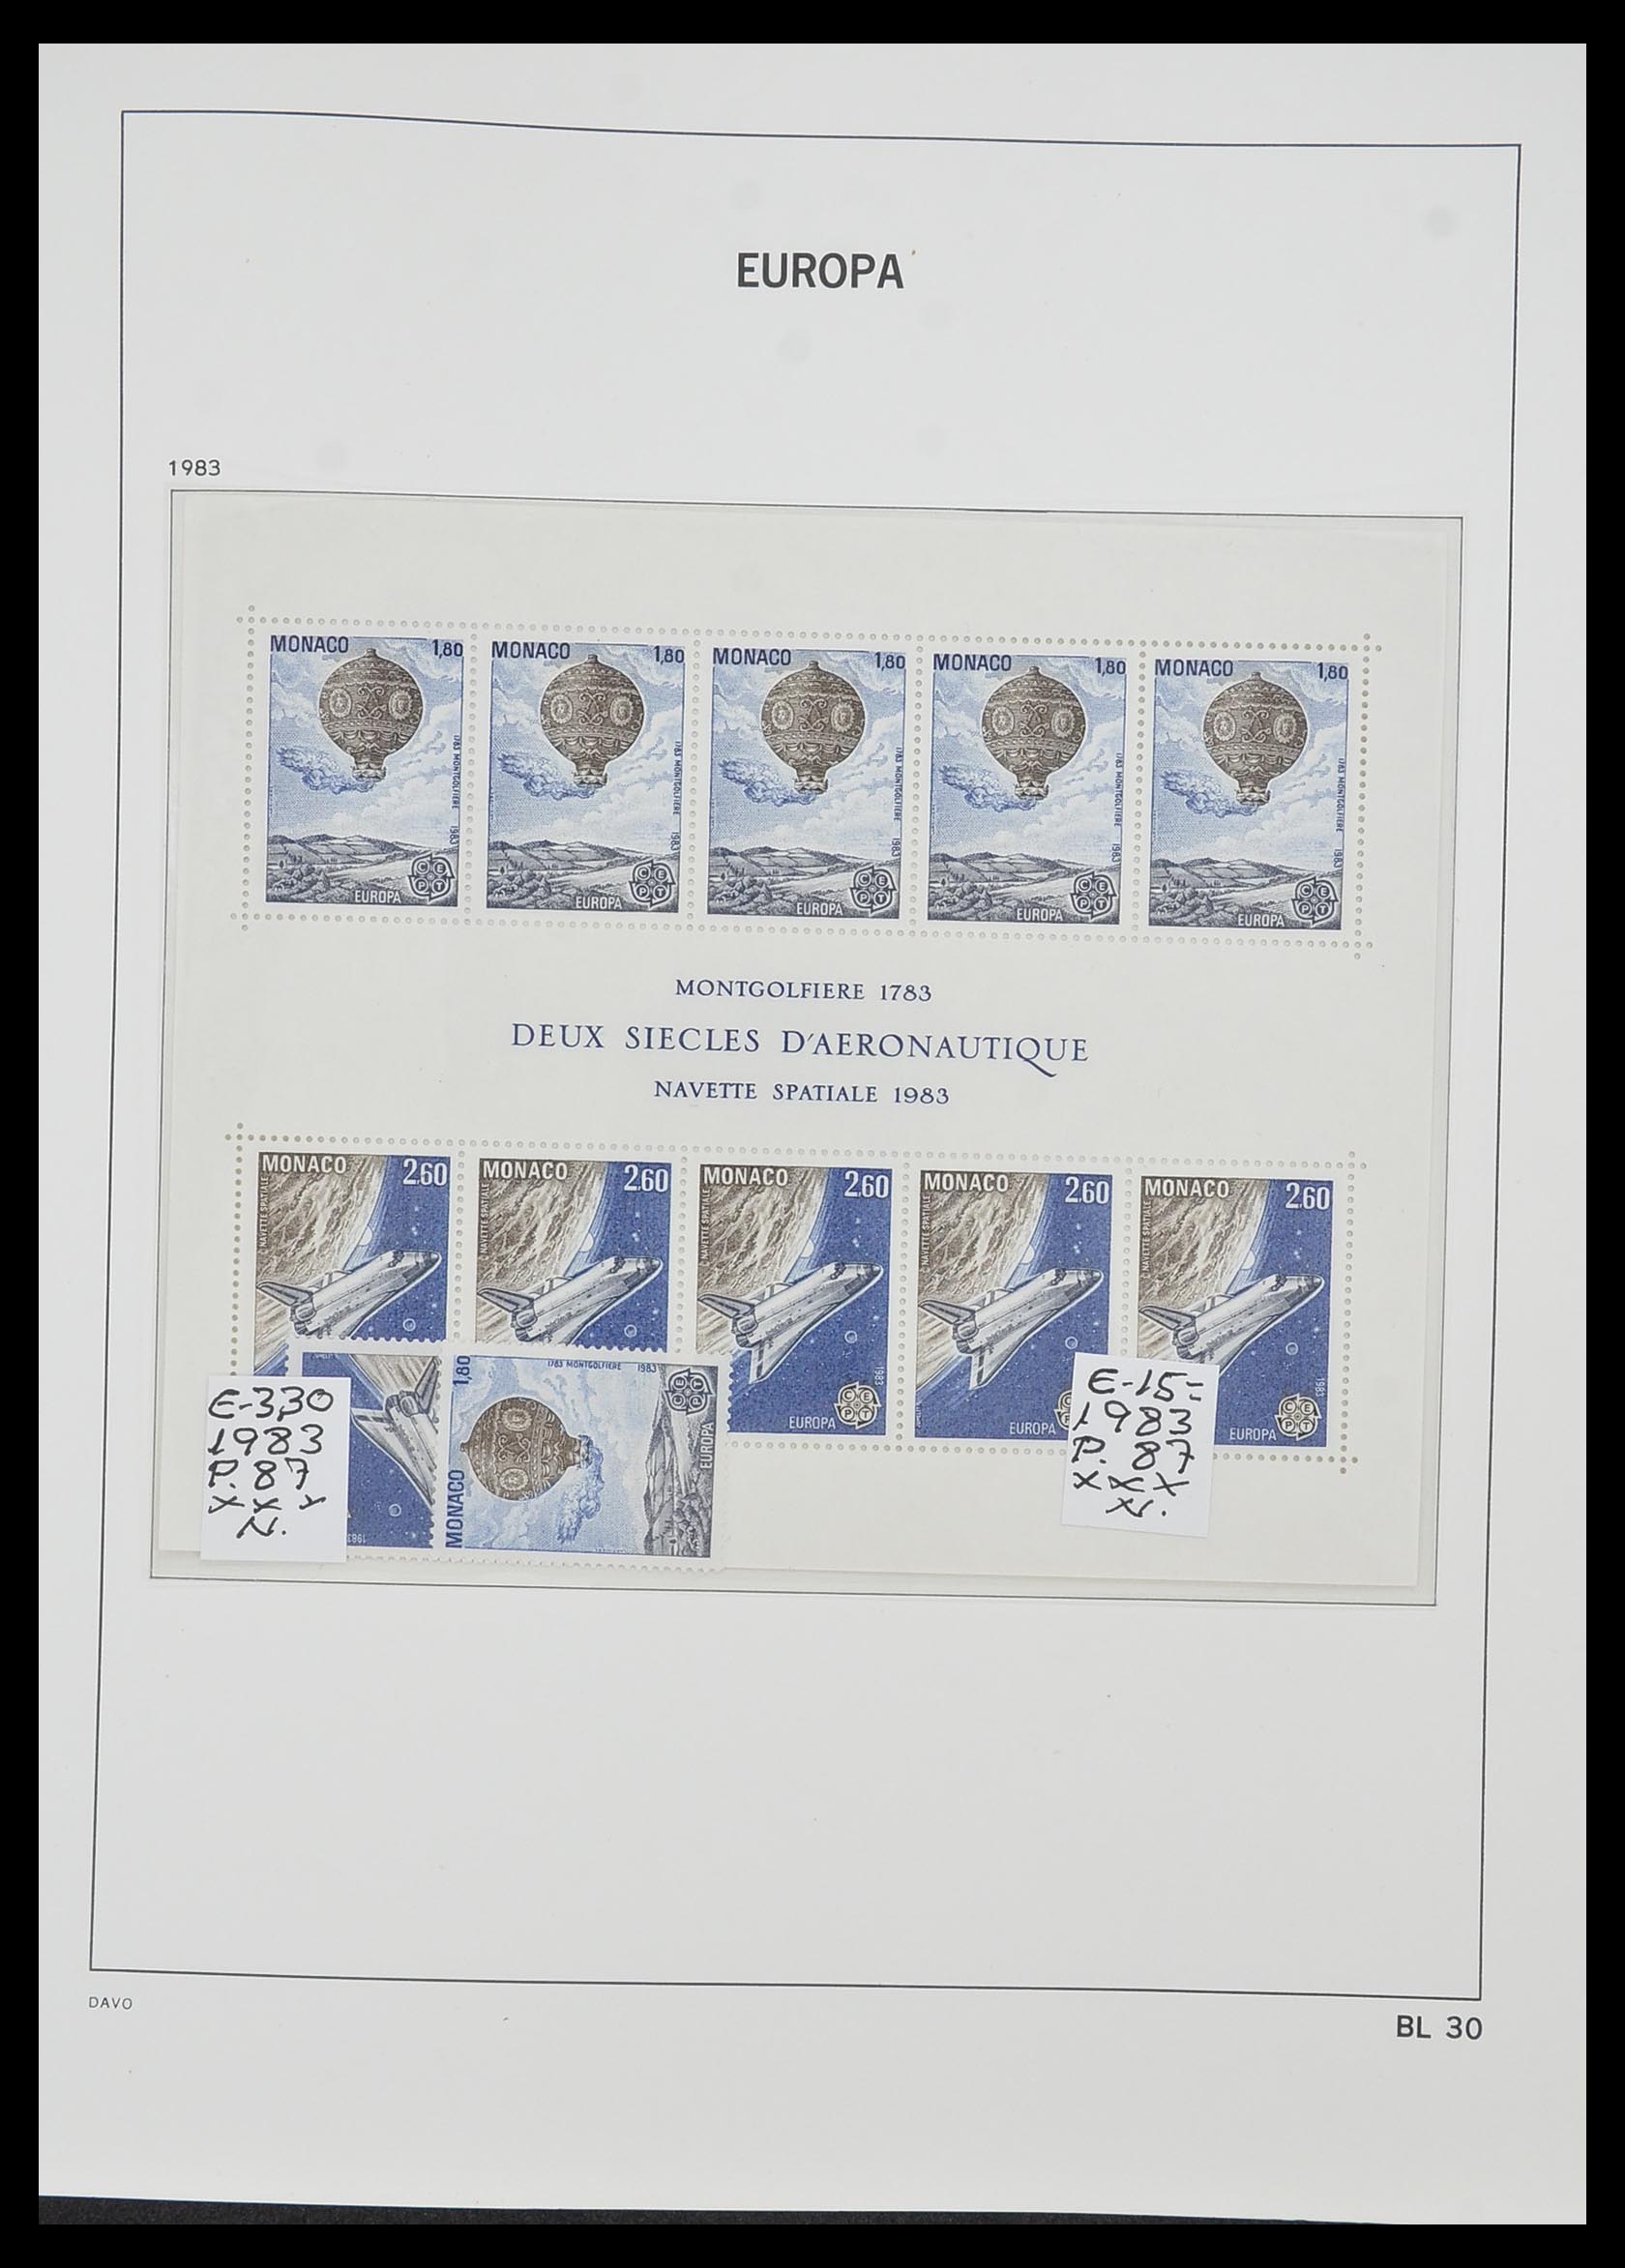 33985 030 - Stamp collection 33985 Europa CEPT souvenir sheets 1974-2014.